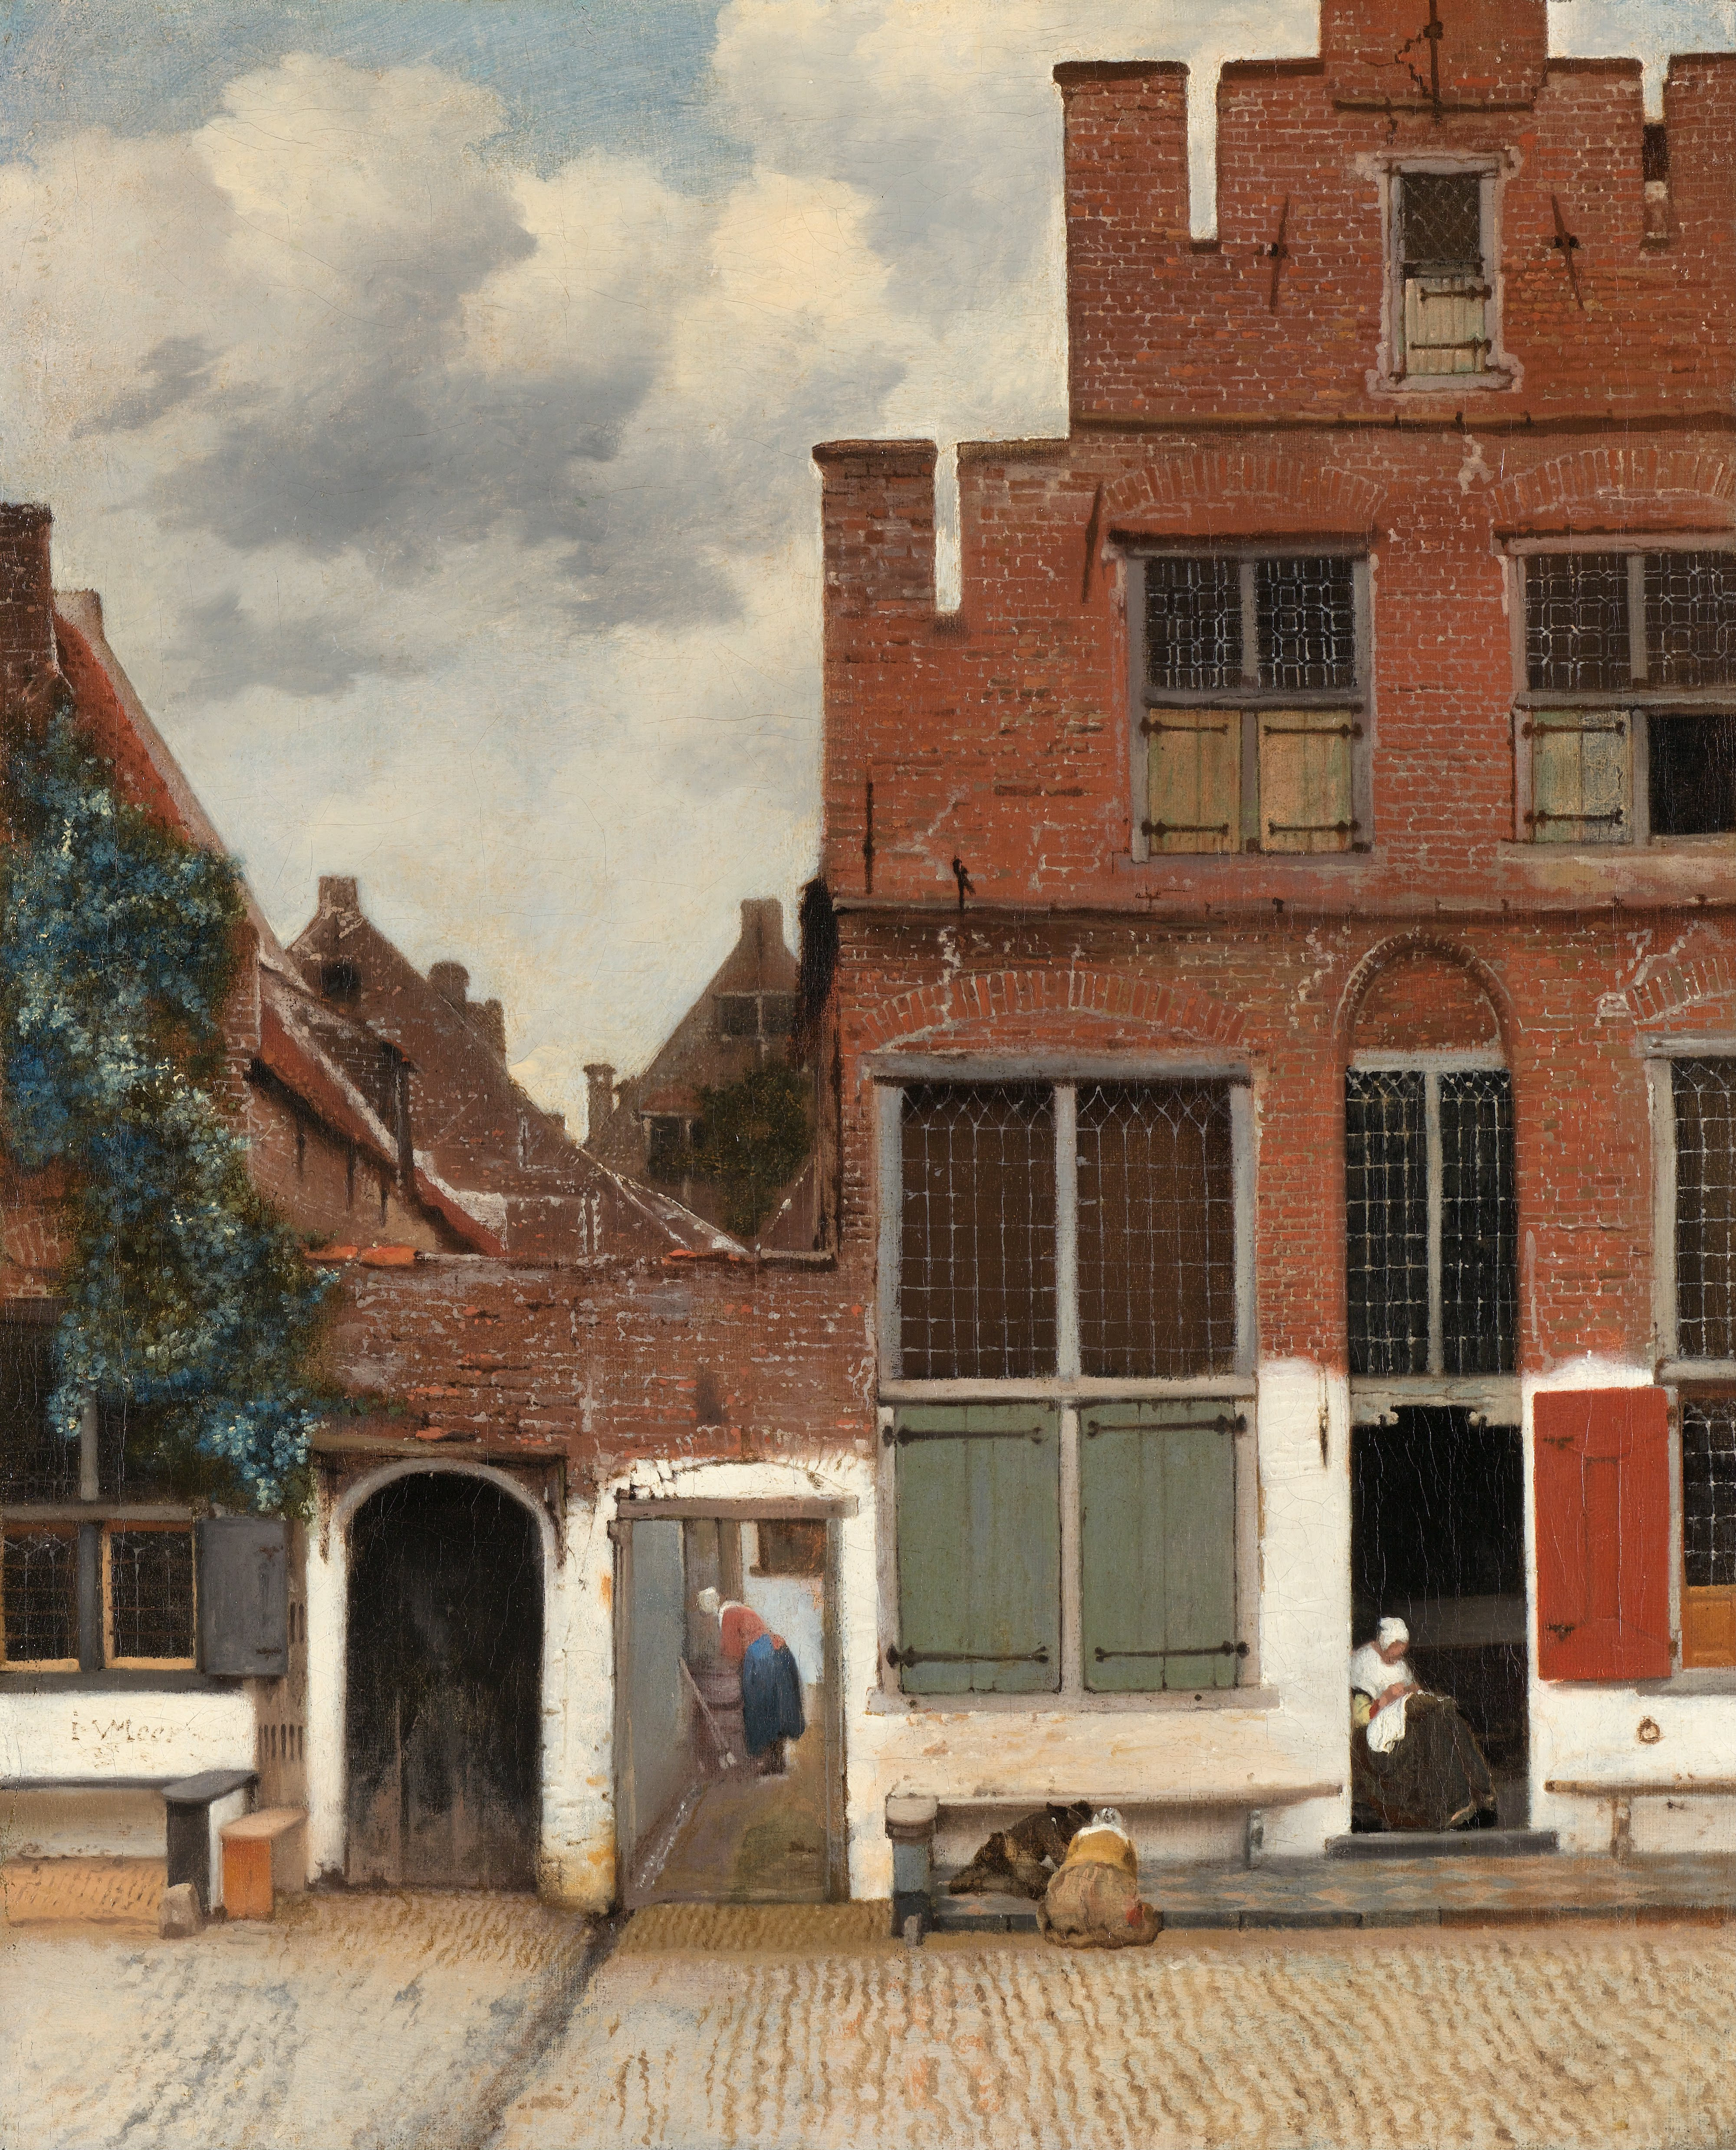 https://upload.wikimedia.org/wikipedia/commons/2/2b/Johannes_Vermeer_-_Gezicht_op_huizen_in_Delft,_bekend_als_'Het_straatje'_-_Google_Art_Project.jpg